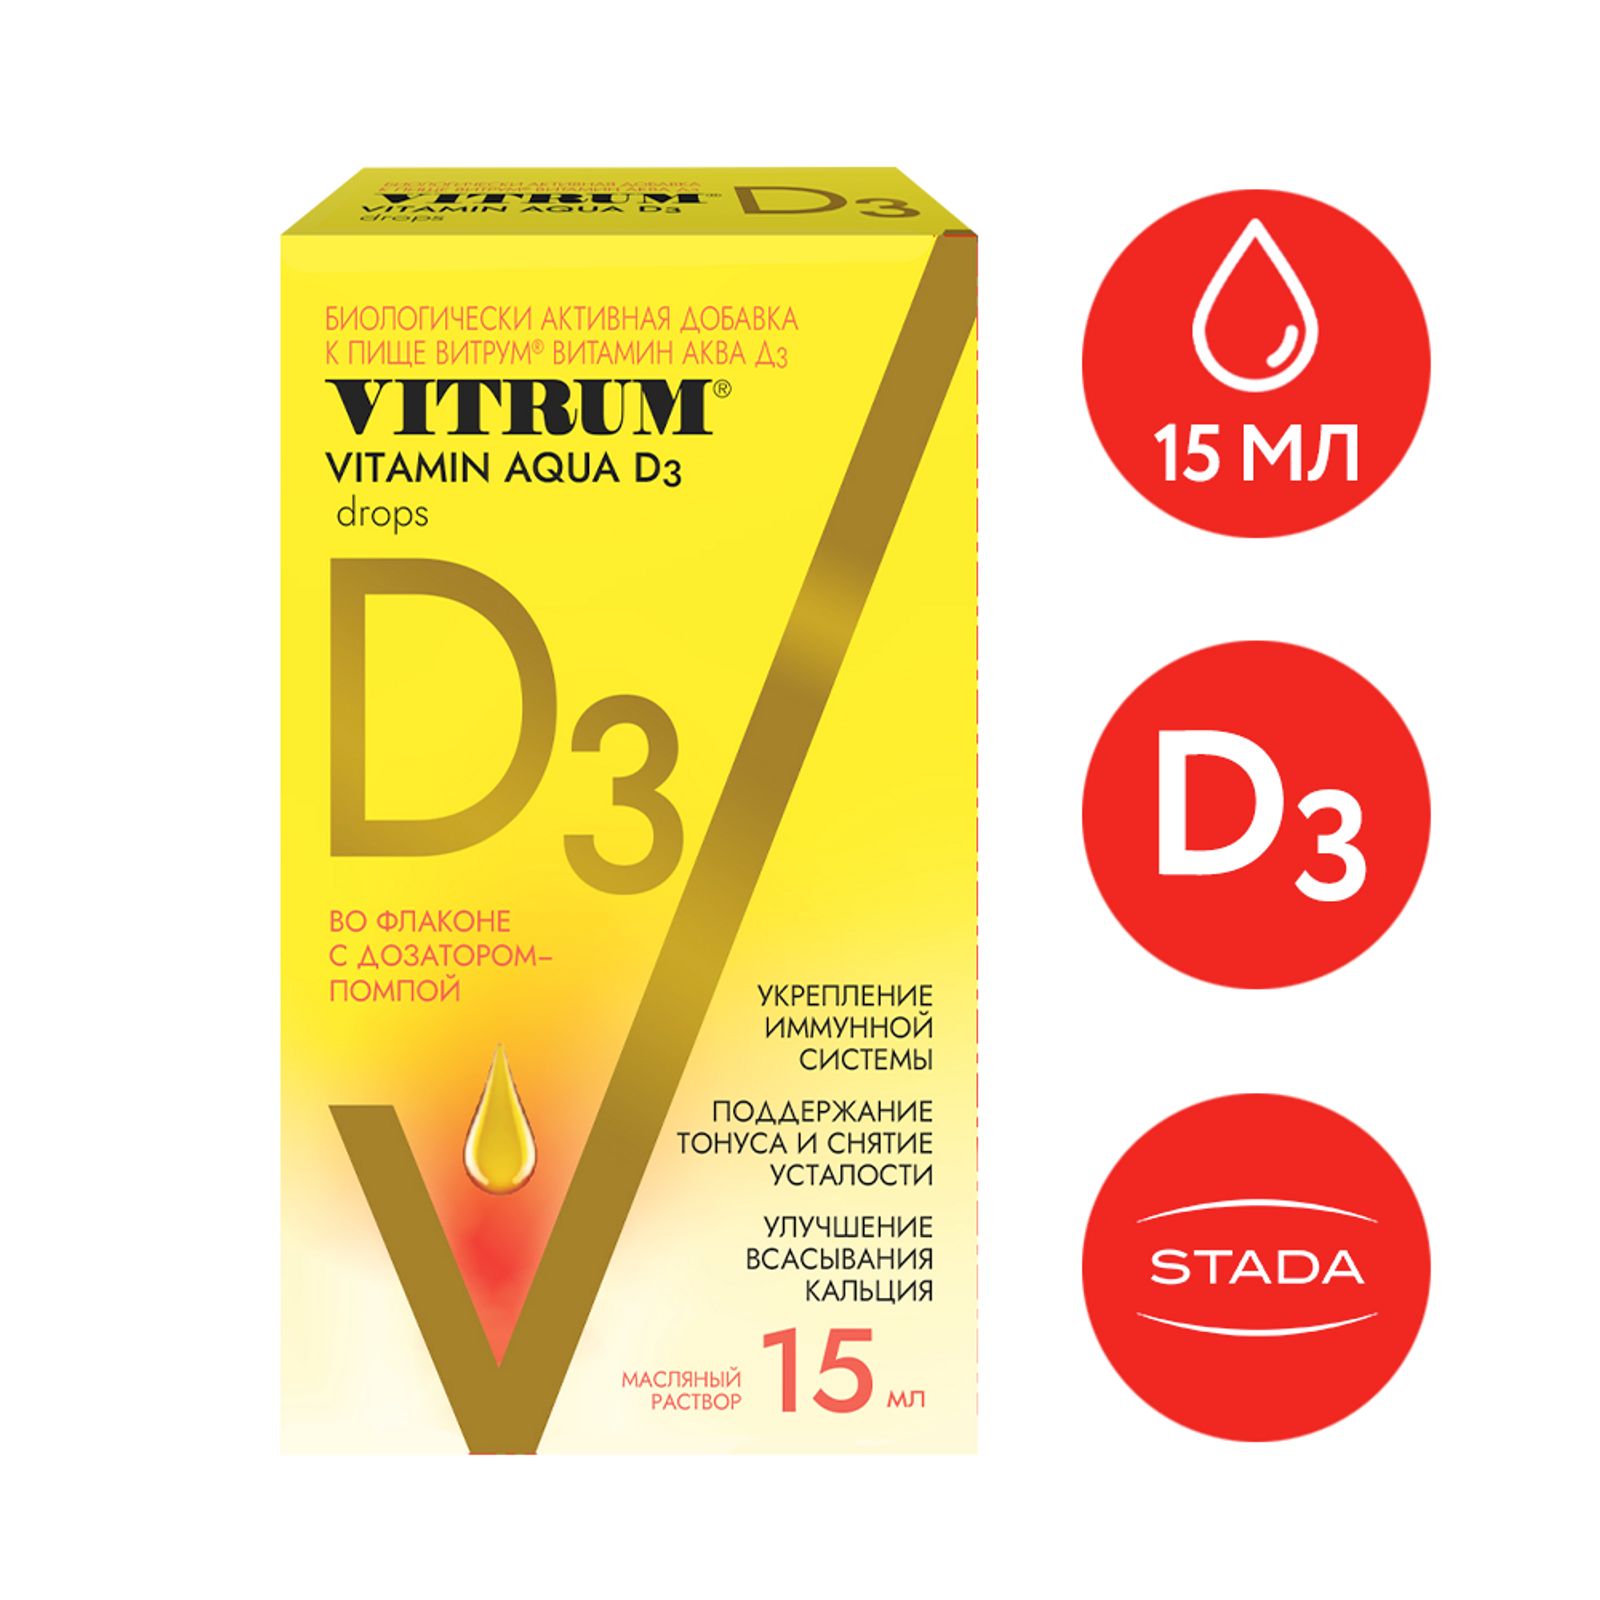 Витрум витамин д3 спрей 400ме 10мл. Витрум витамин д3 Актив. Аква d3. Aqua d3 витамин.